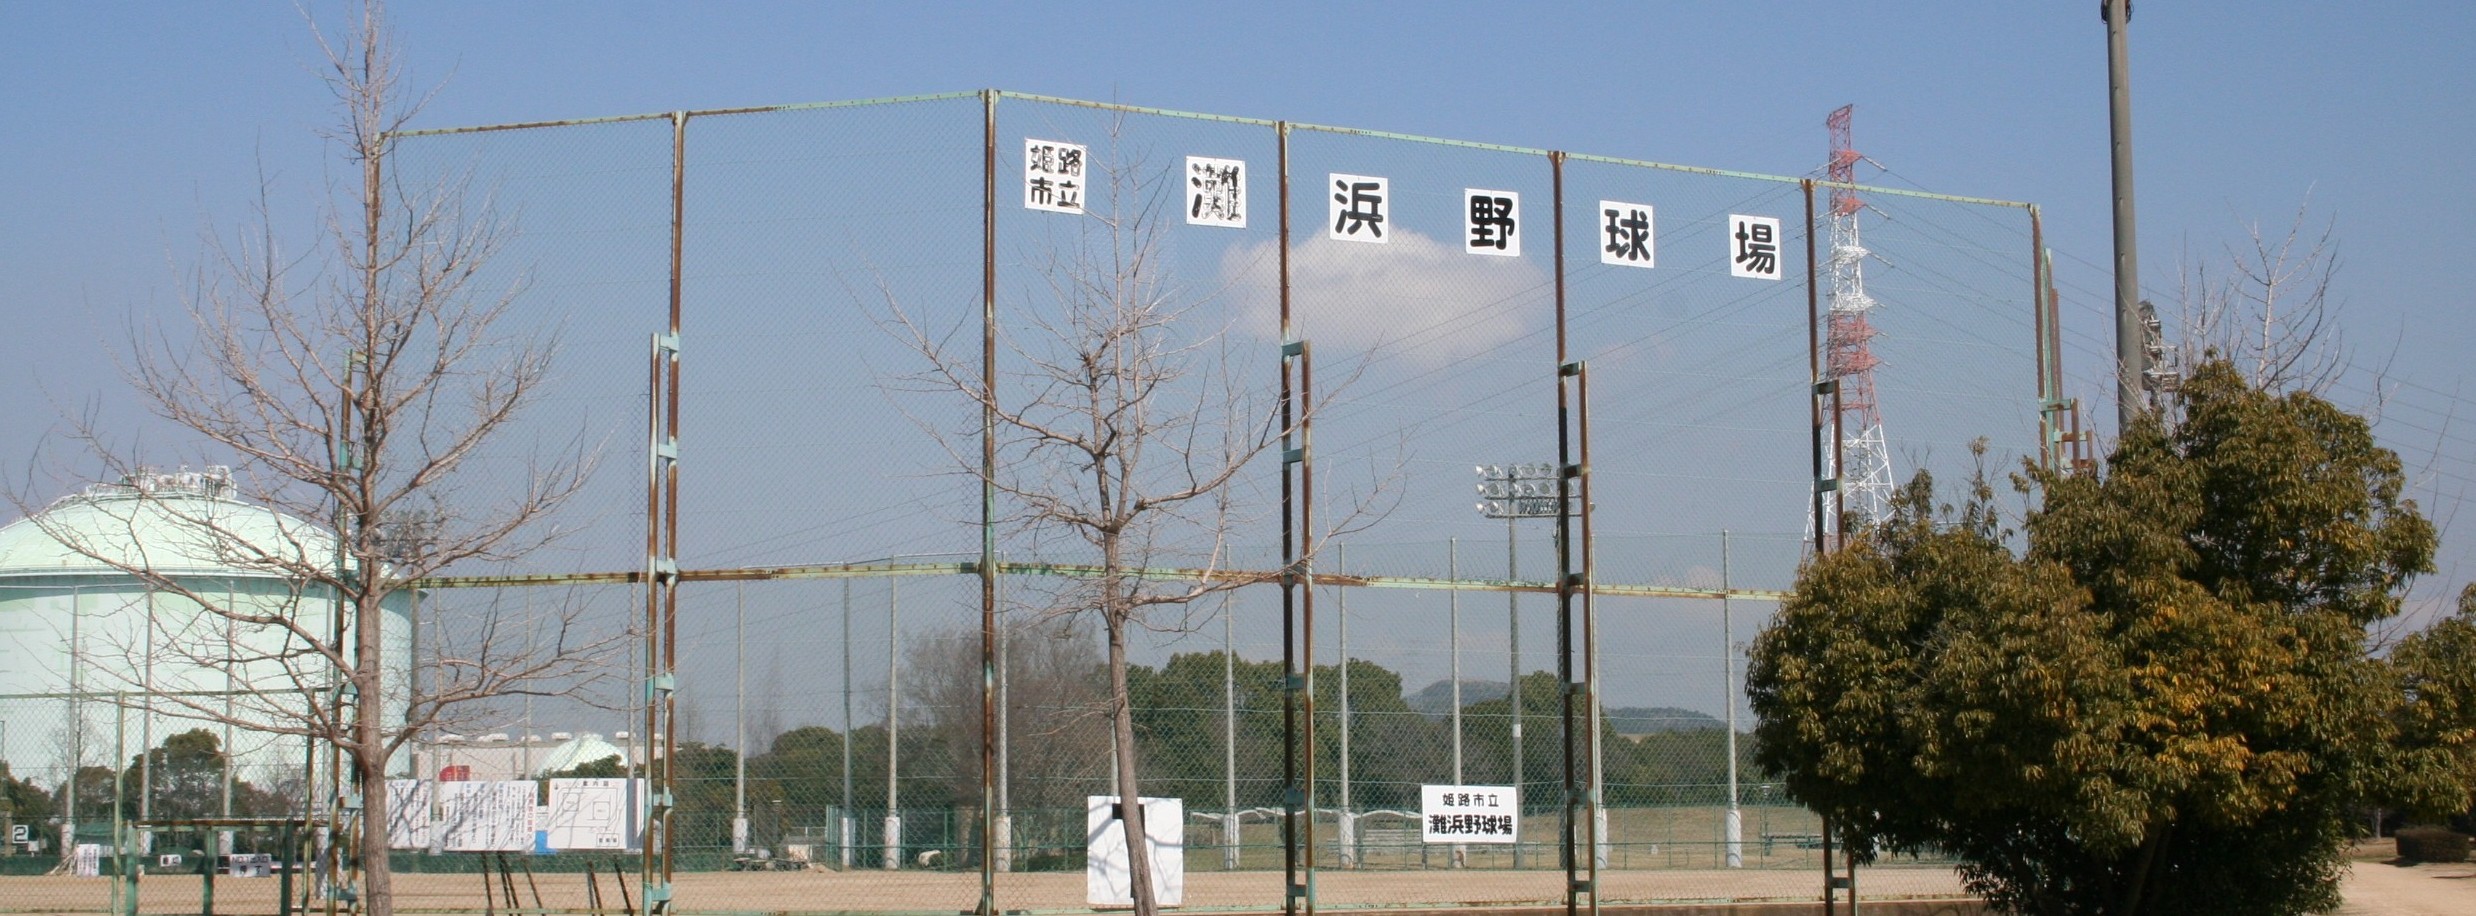 姫路市立灘浜野球場イメージ画像